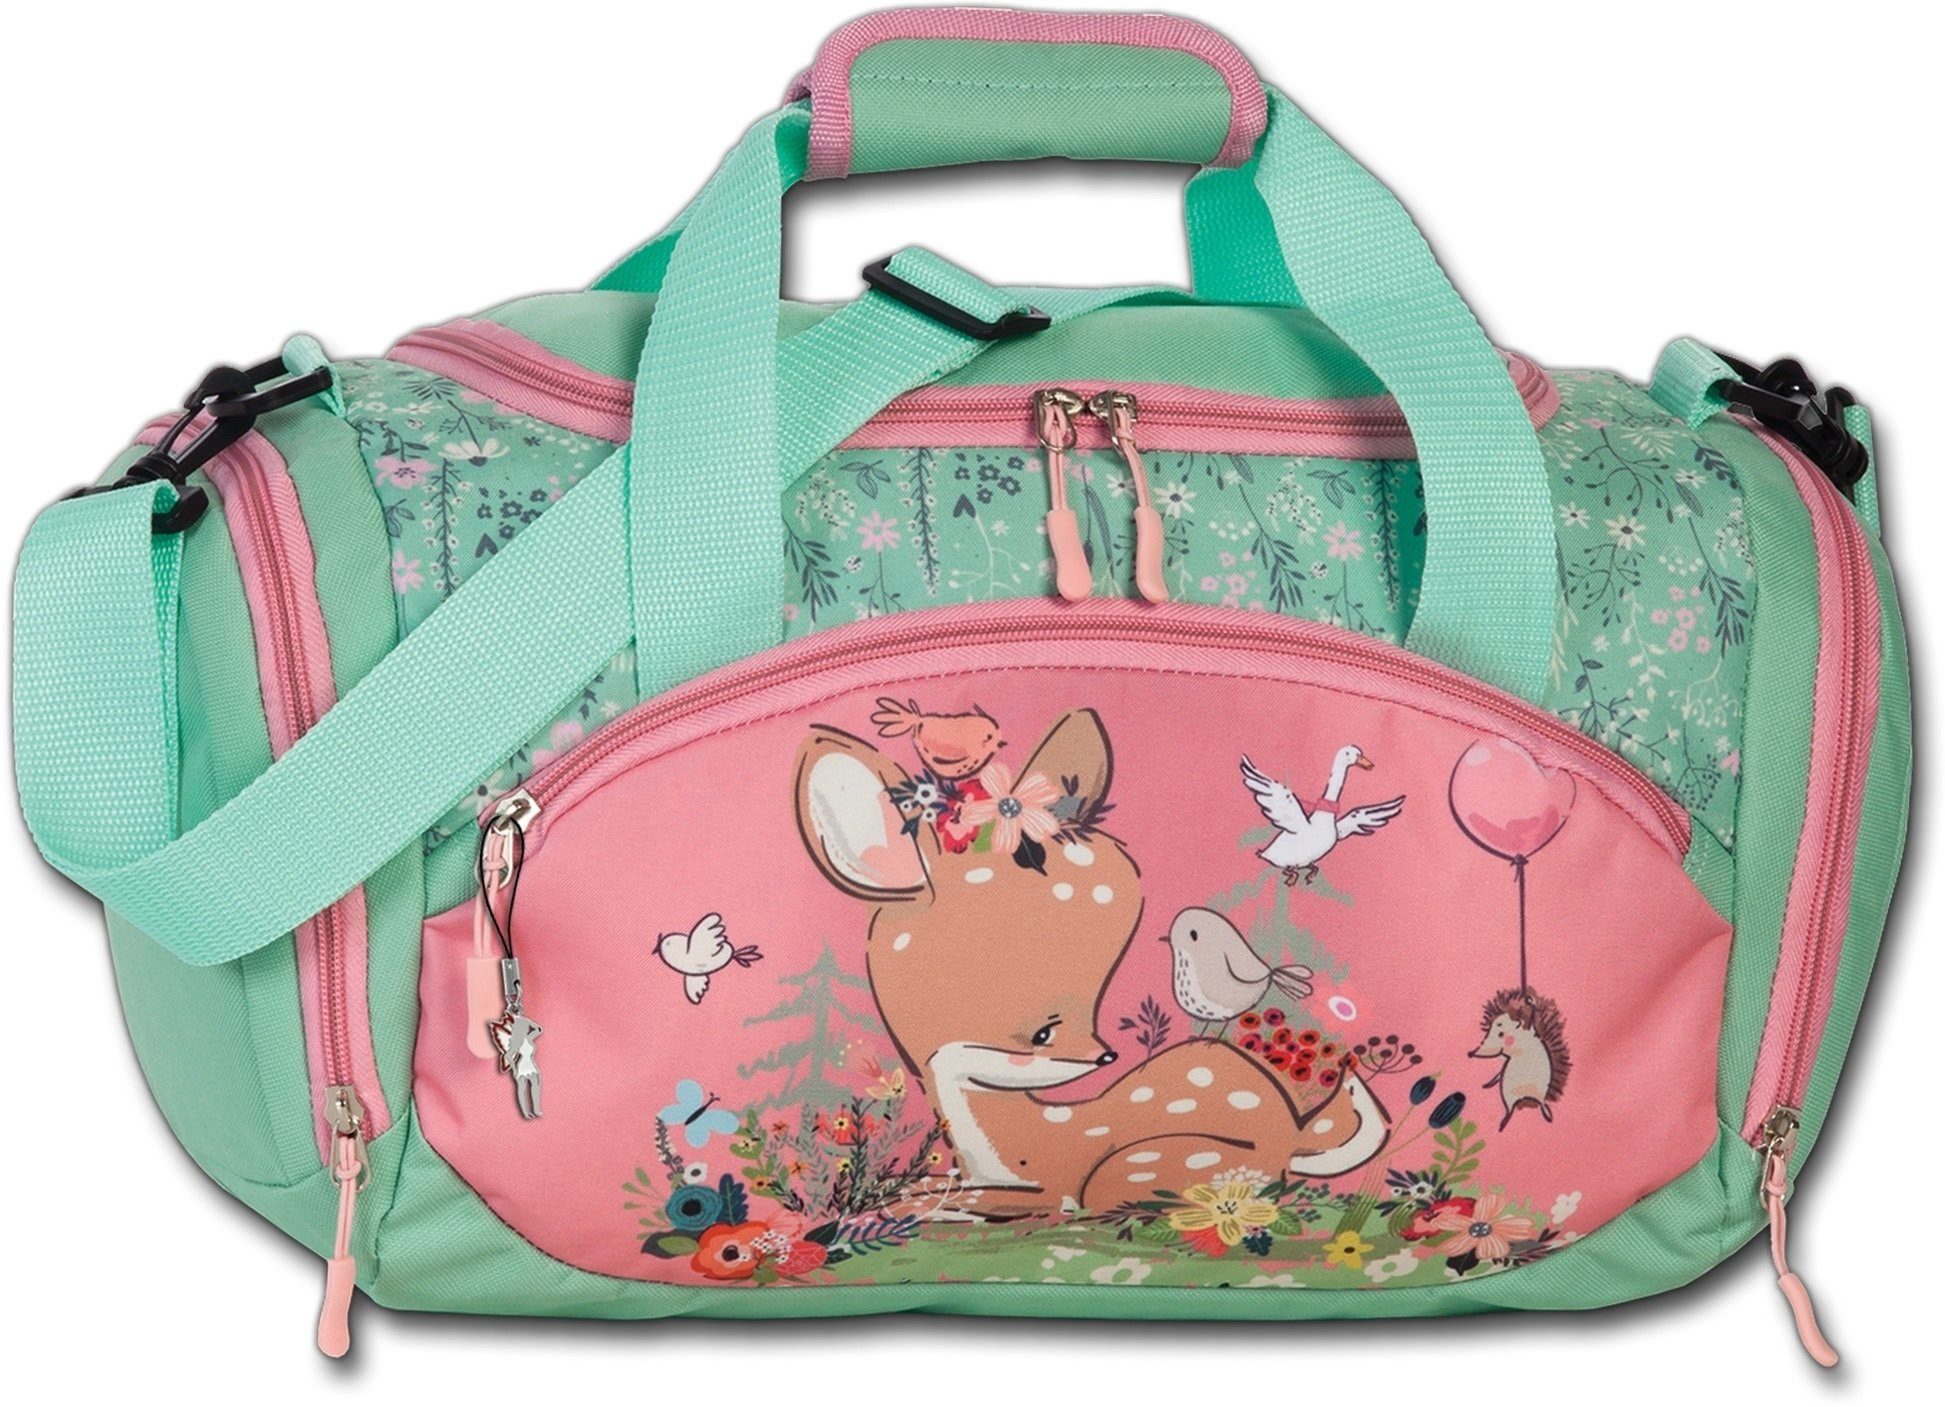 fabrizio® Reisetasche Fabrizio Kindersporttasche Reisetasche, Kinder Tasche  Textil-Polyester rosa, grün, Reh, Blumen